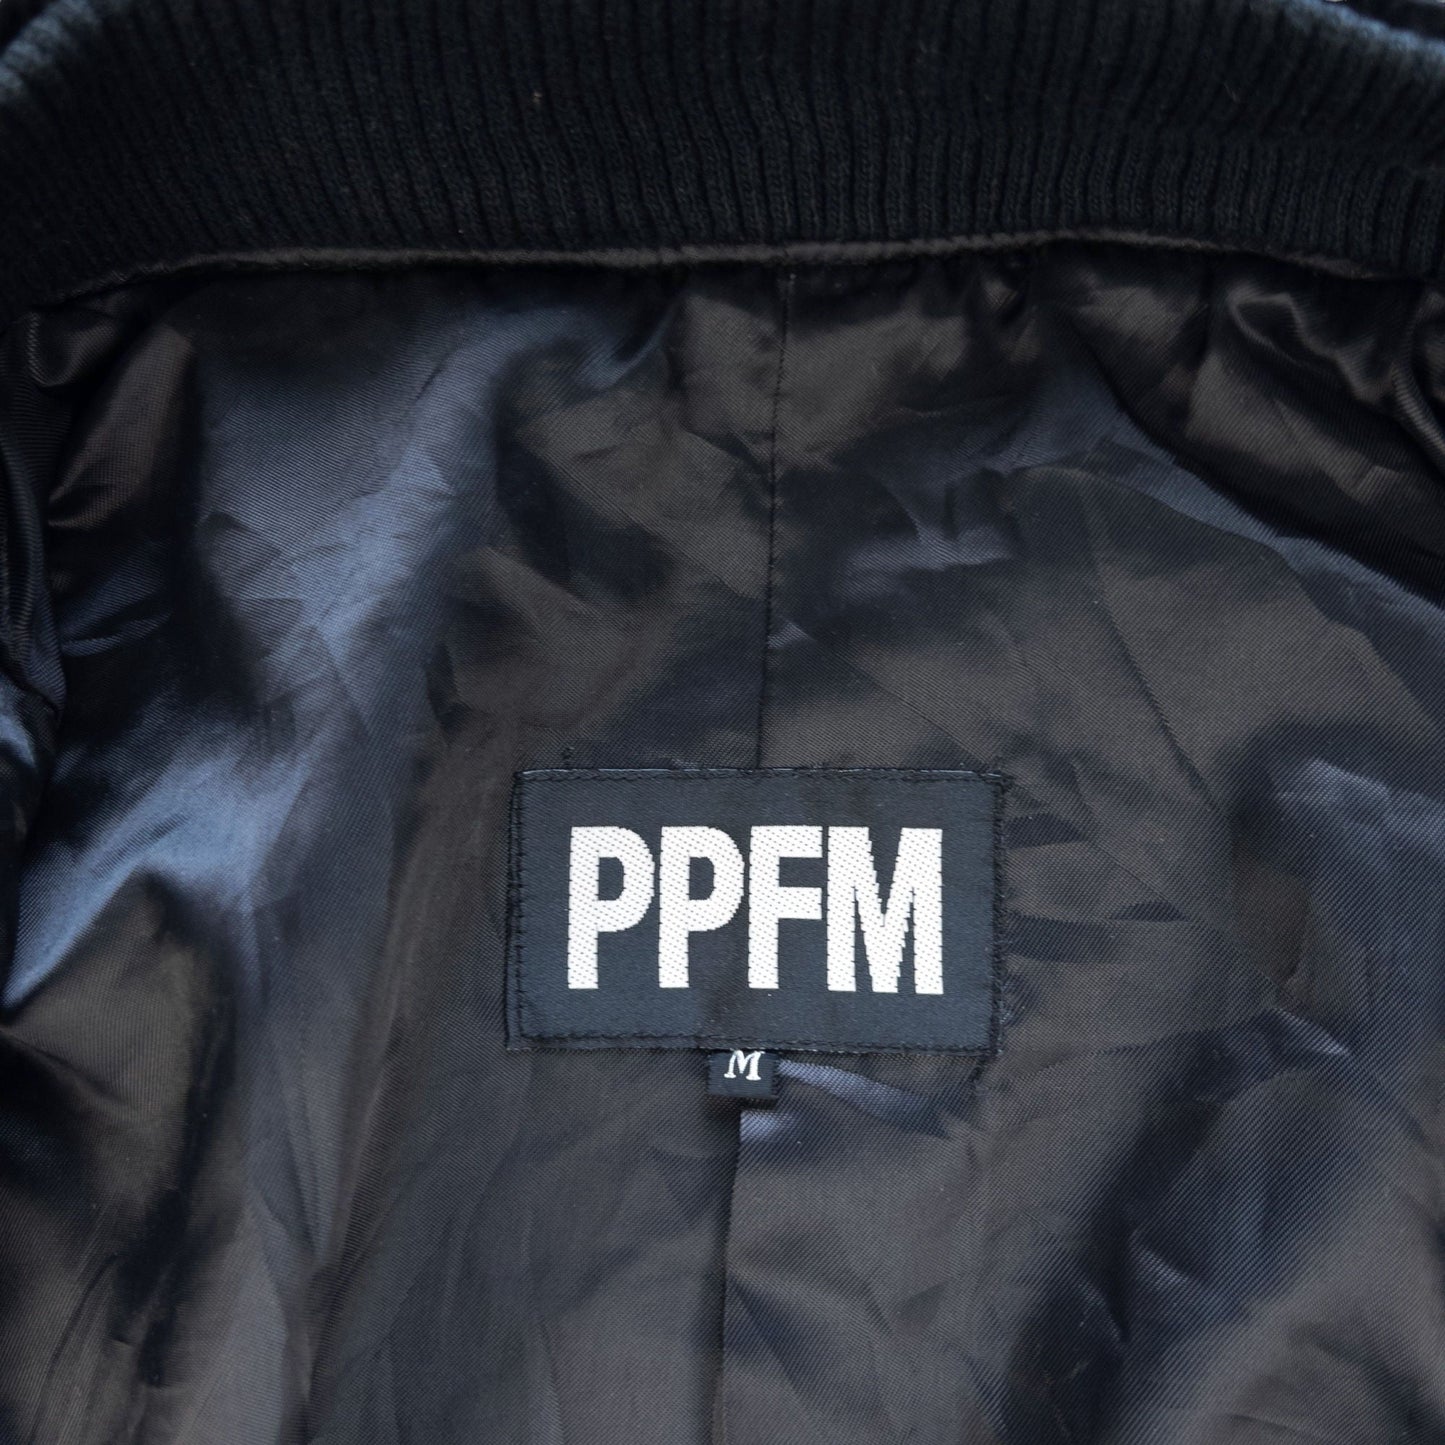 Vintage PPFM Zip Up Jacket Woman's Size M